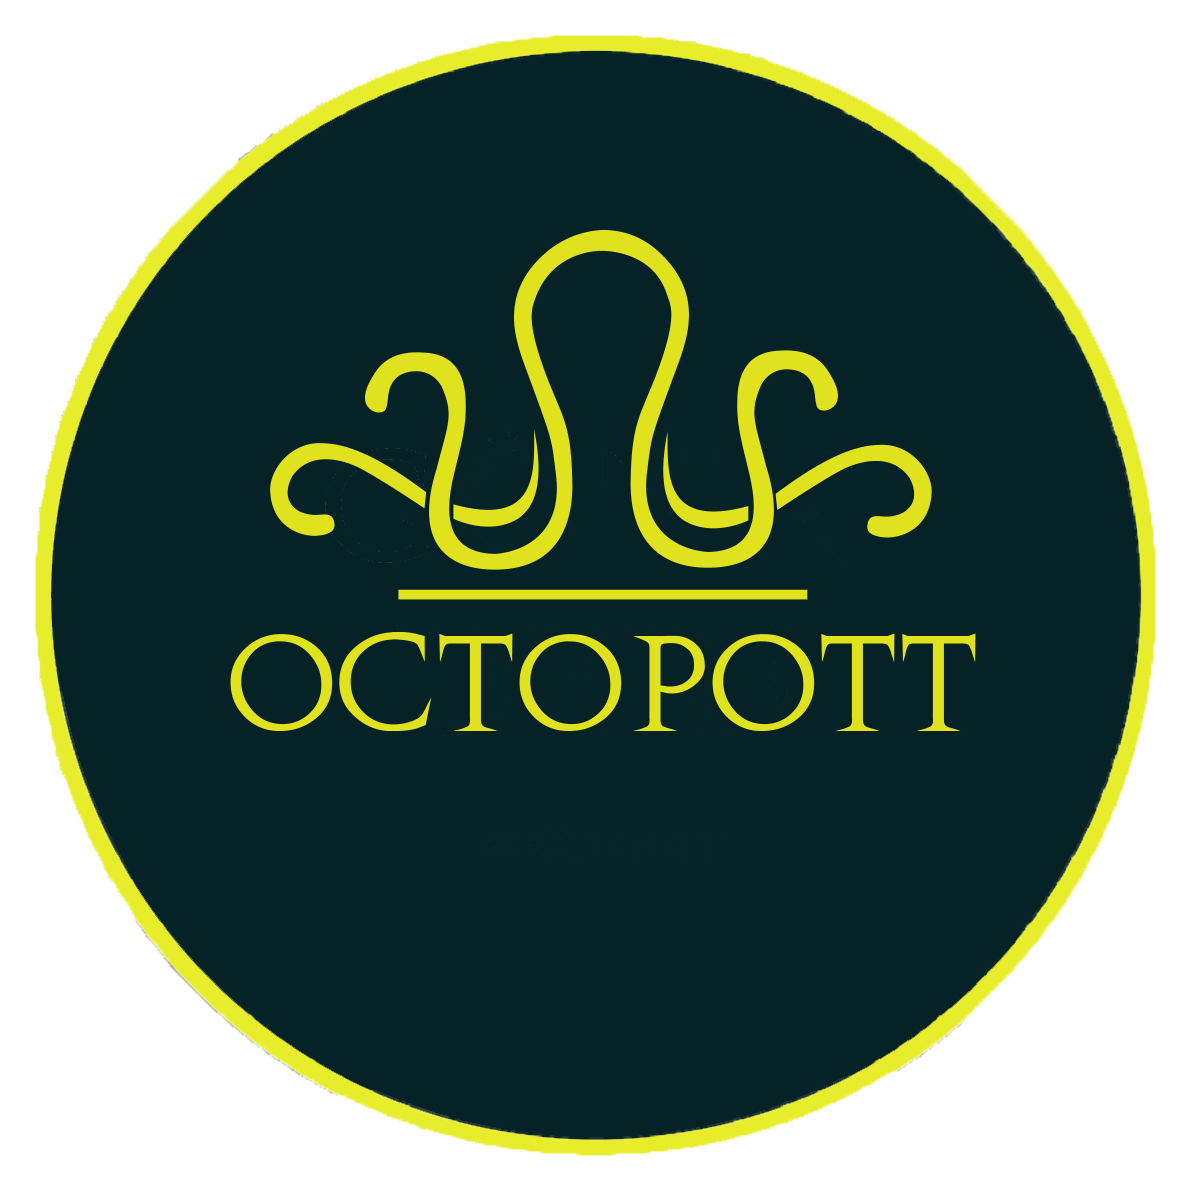 Octopott